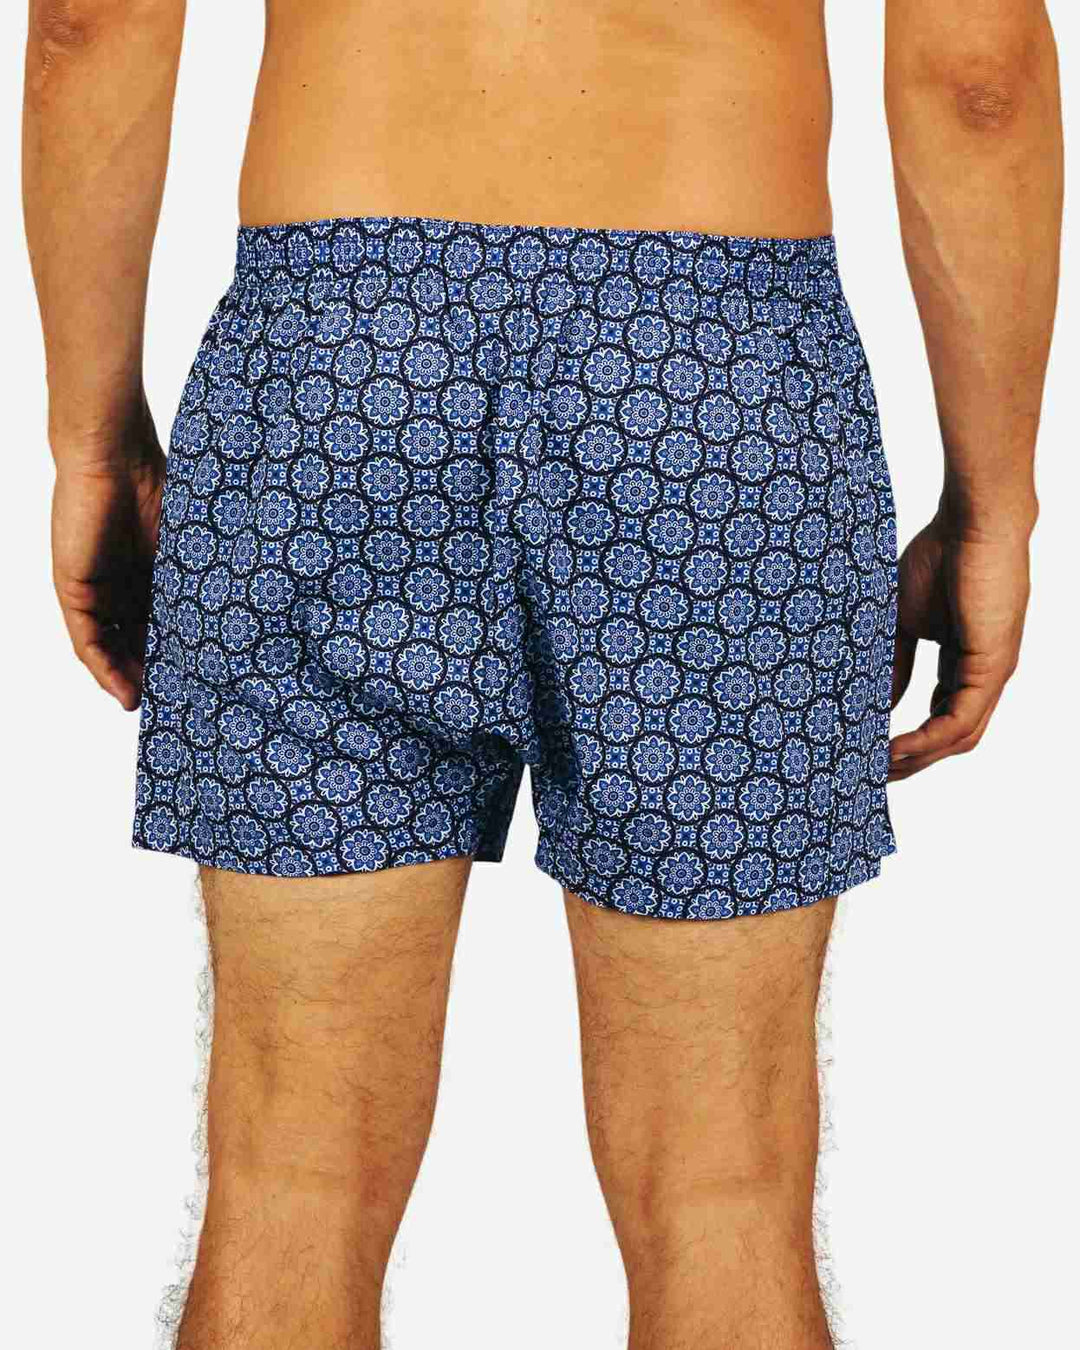 Mens boxer shorts - Indigo floral